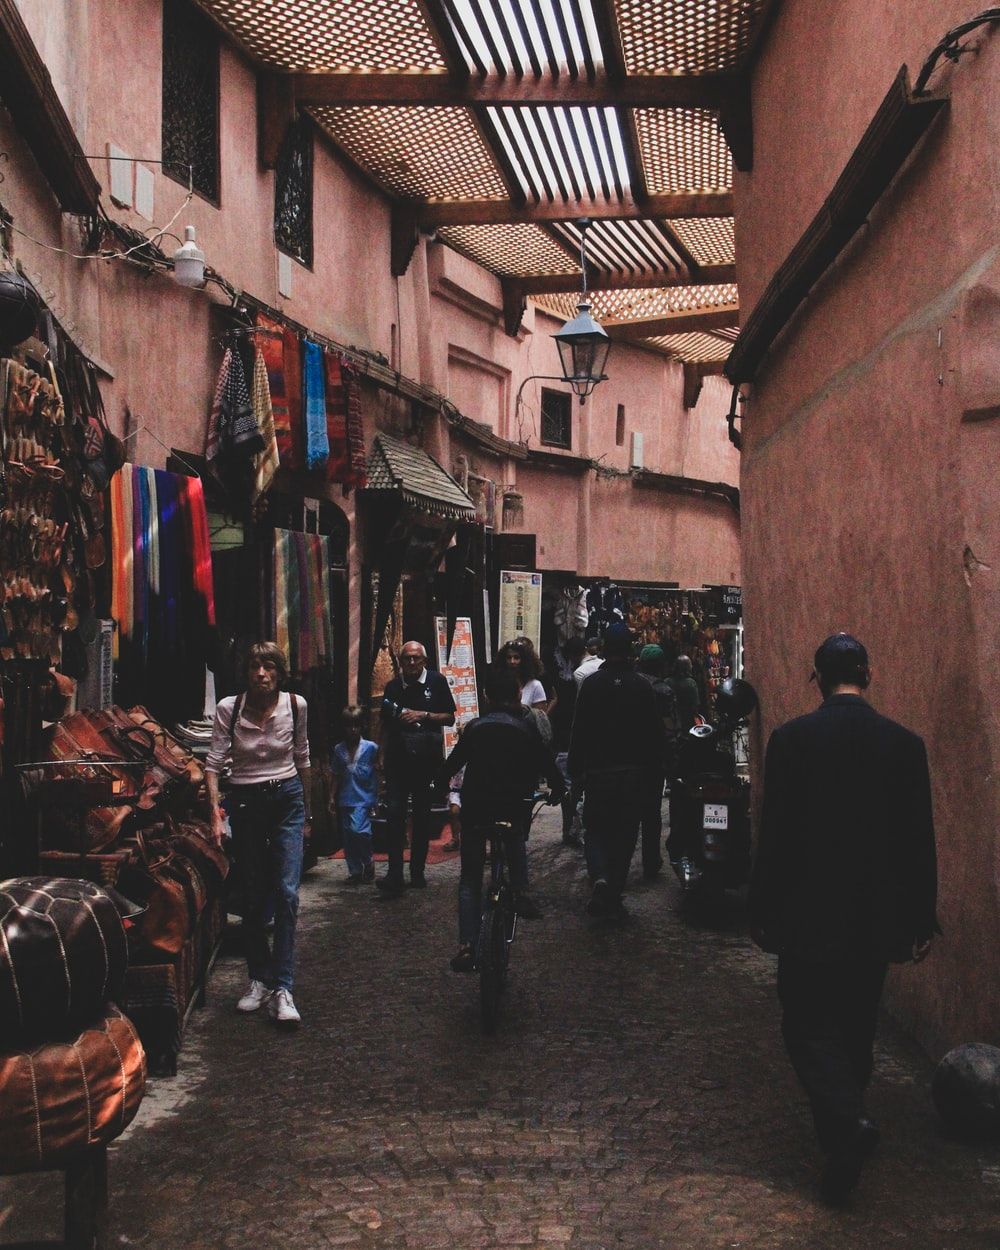 بازار های تنگ و جالب مراکش در یک قاب هنری 1402